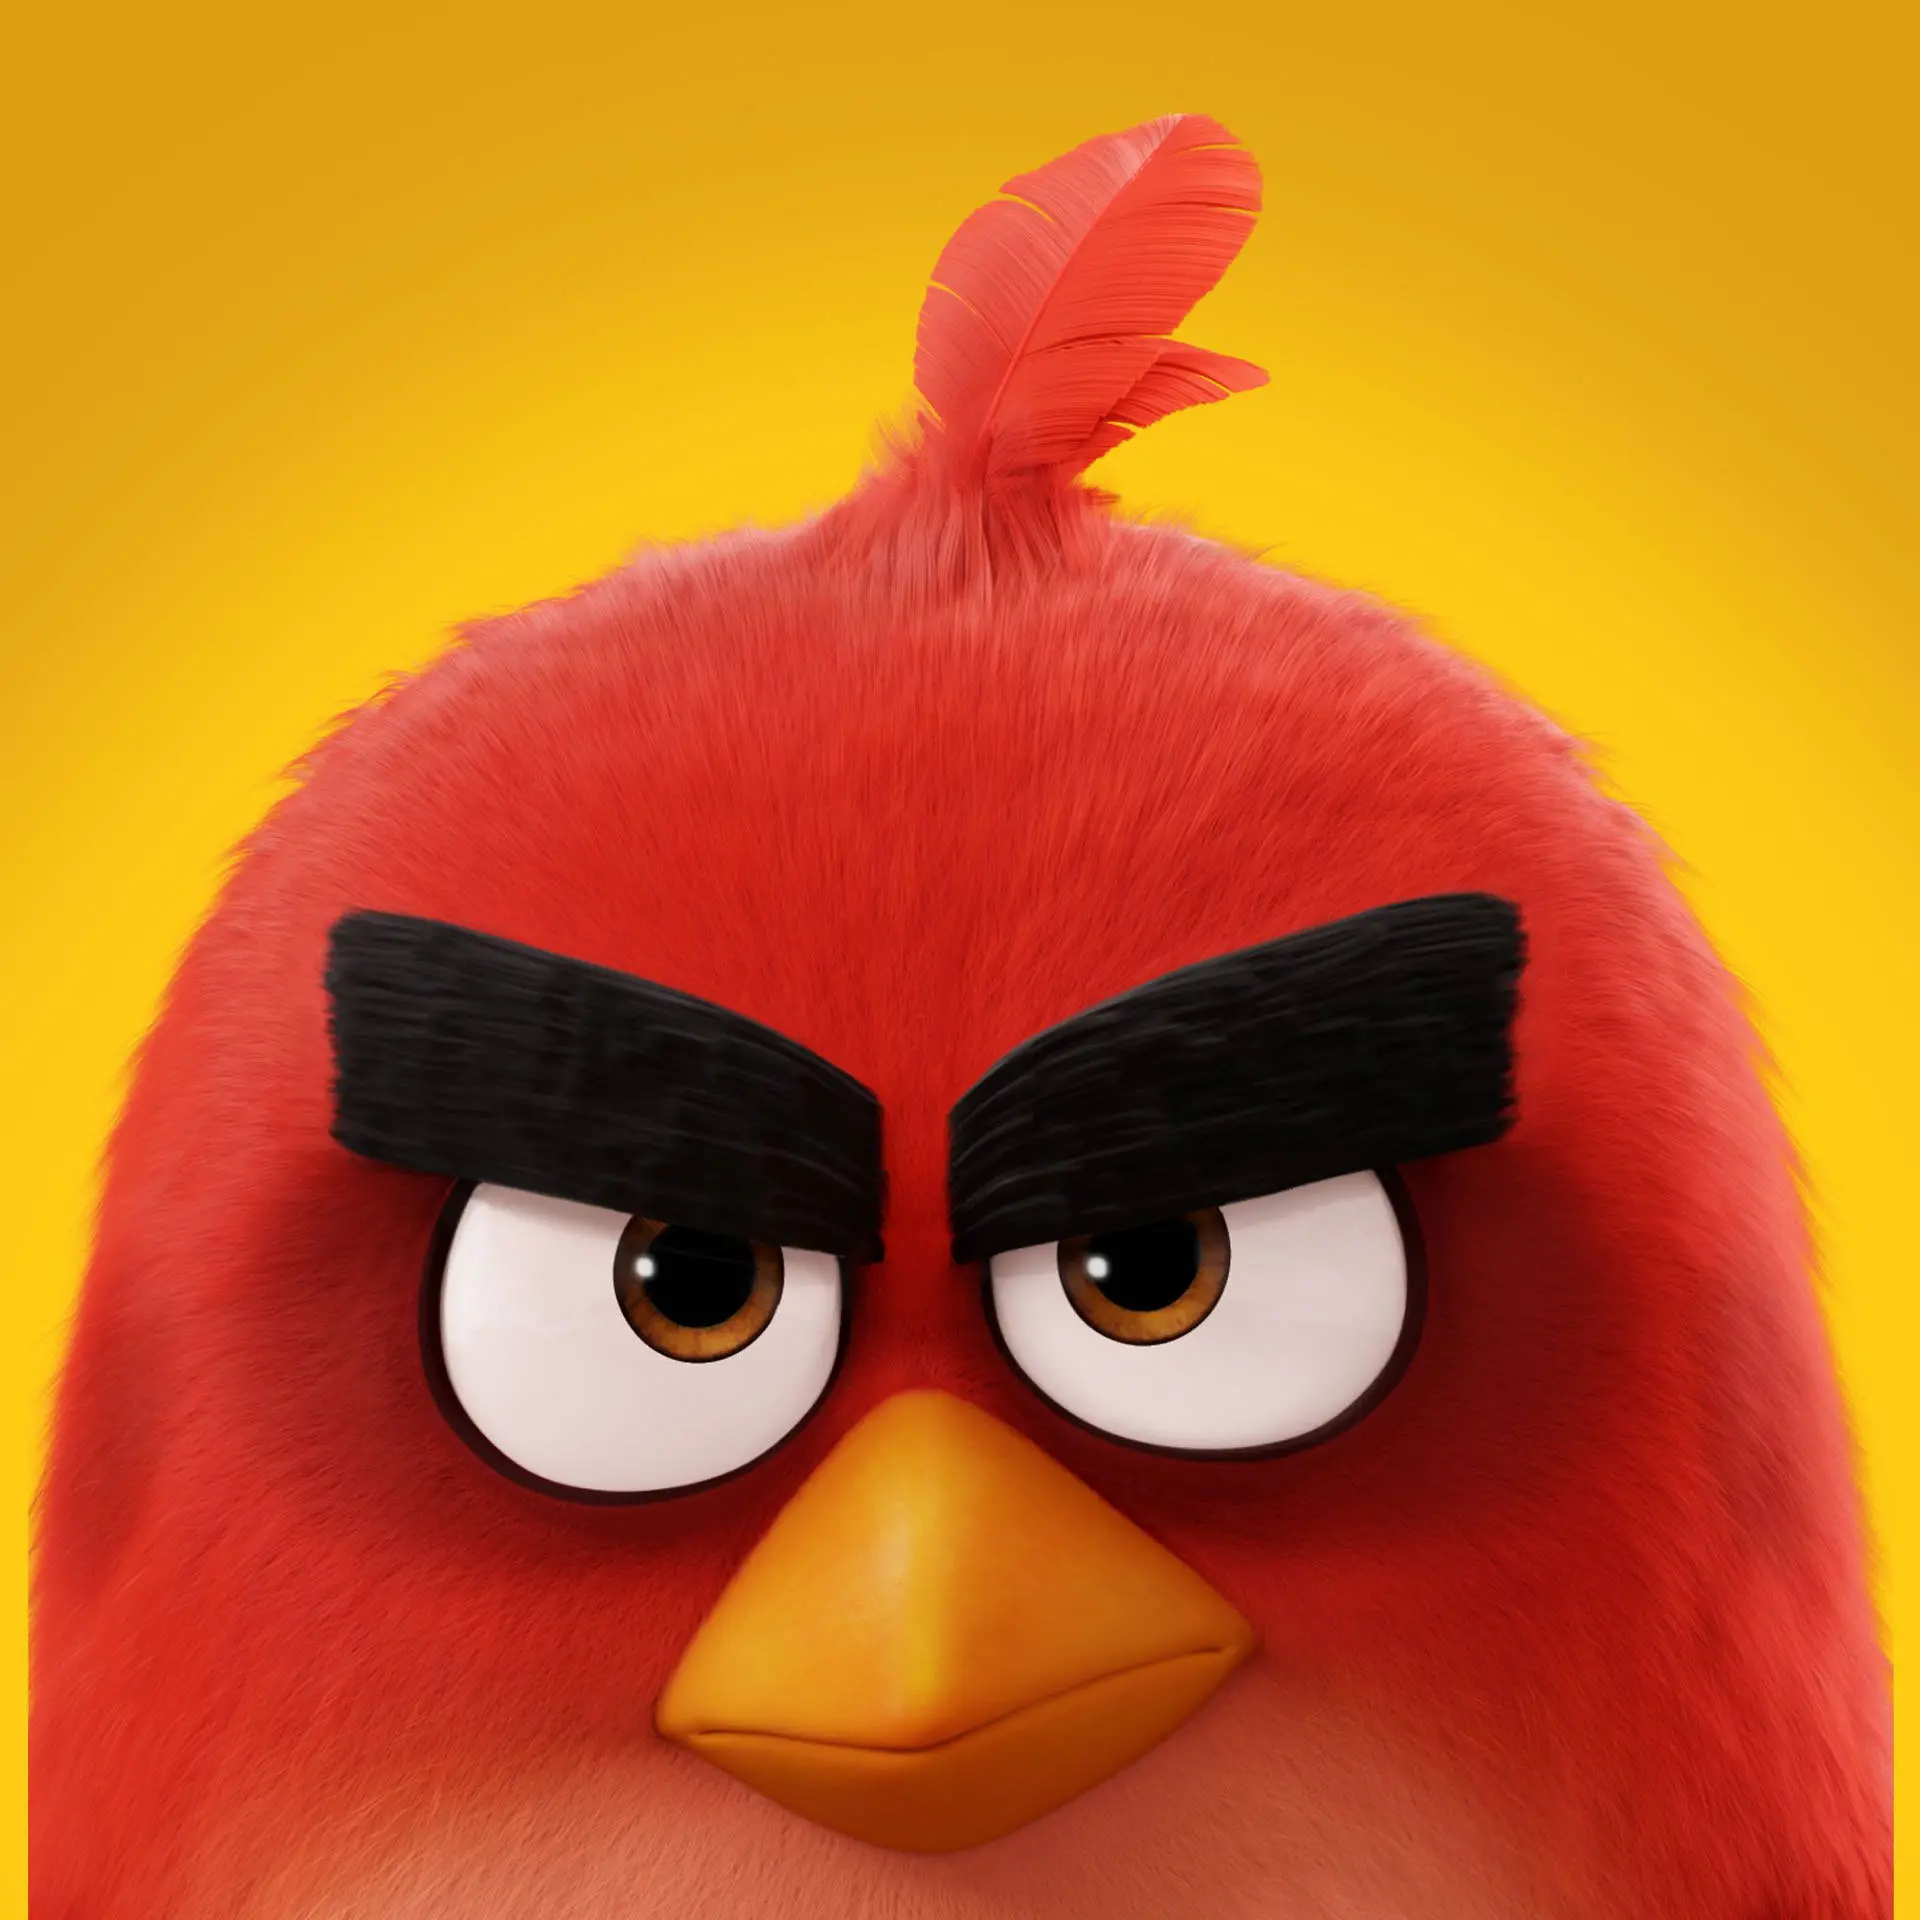 Unduh Wallpaper Angry Birds Movie 2 Tampilan Mengancam | Wallpaper.com